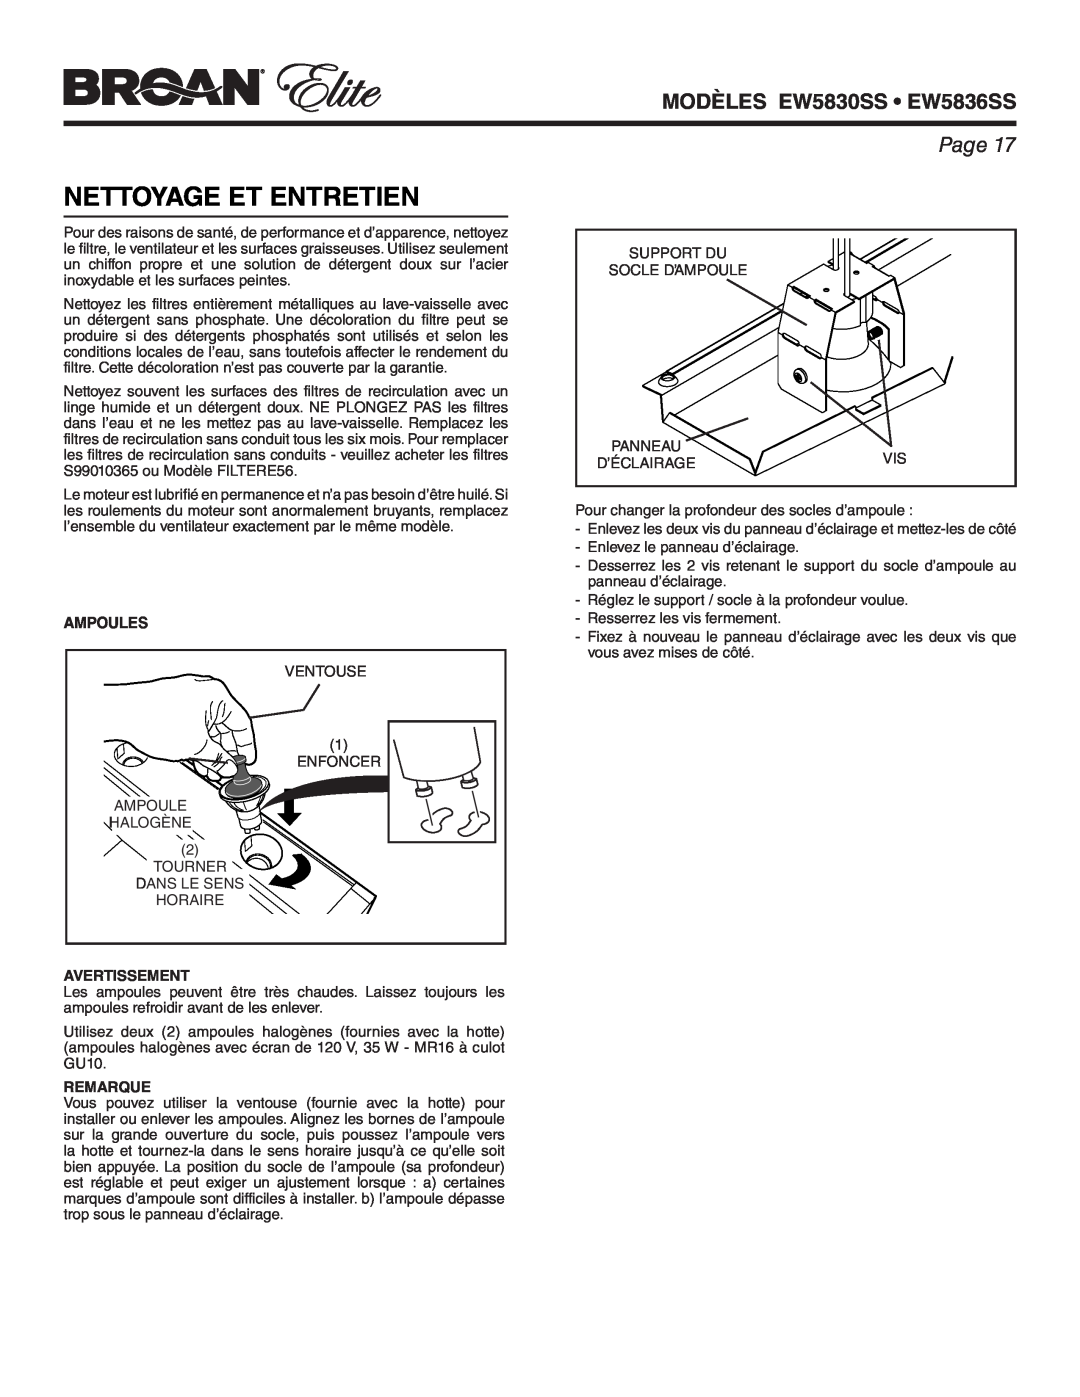 Broan warranty Nettoyage Et Entretien, Ampoules, MODÈLES EW5830SS EW5836SS, Page, Avertissement, Remarque 